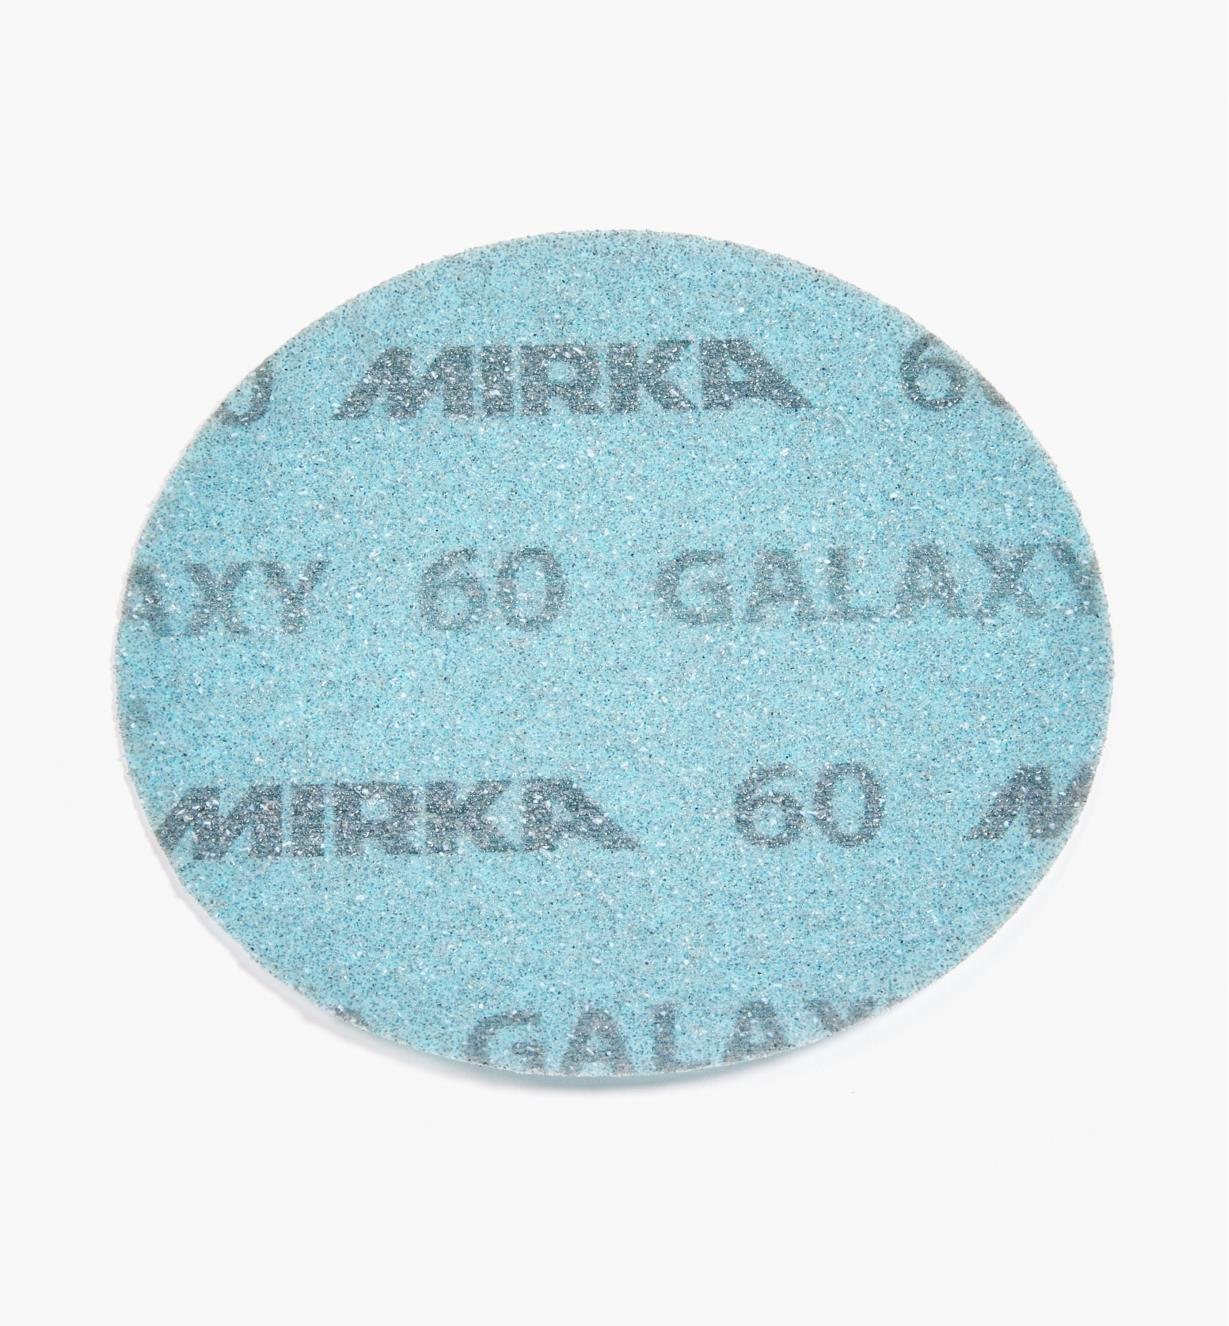 08K1302 - Disque abrasif autoagrippant Galaxy, 5 po, grain 60, l'unité